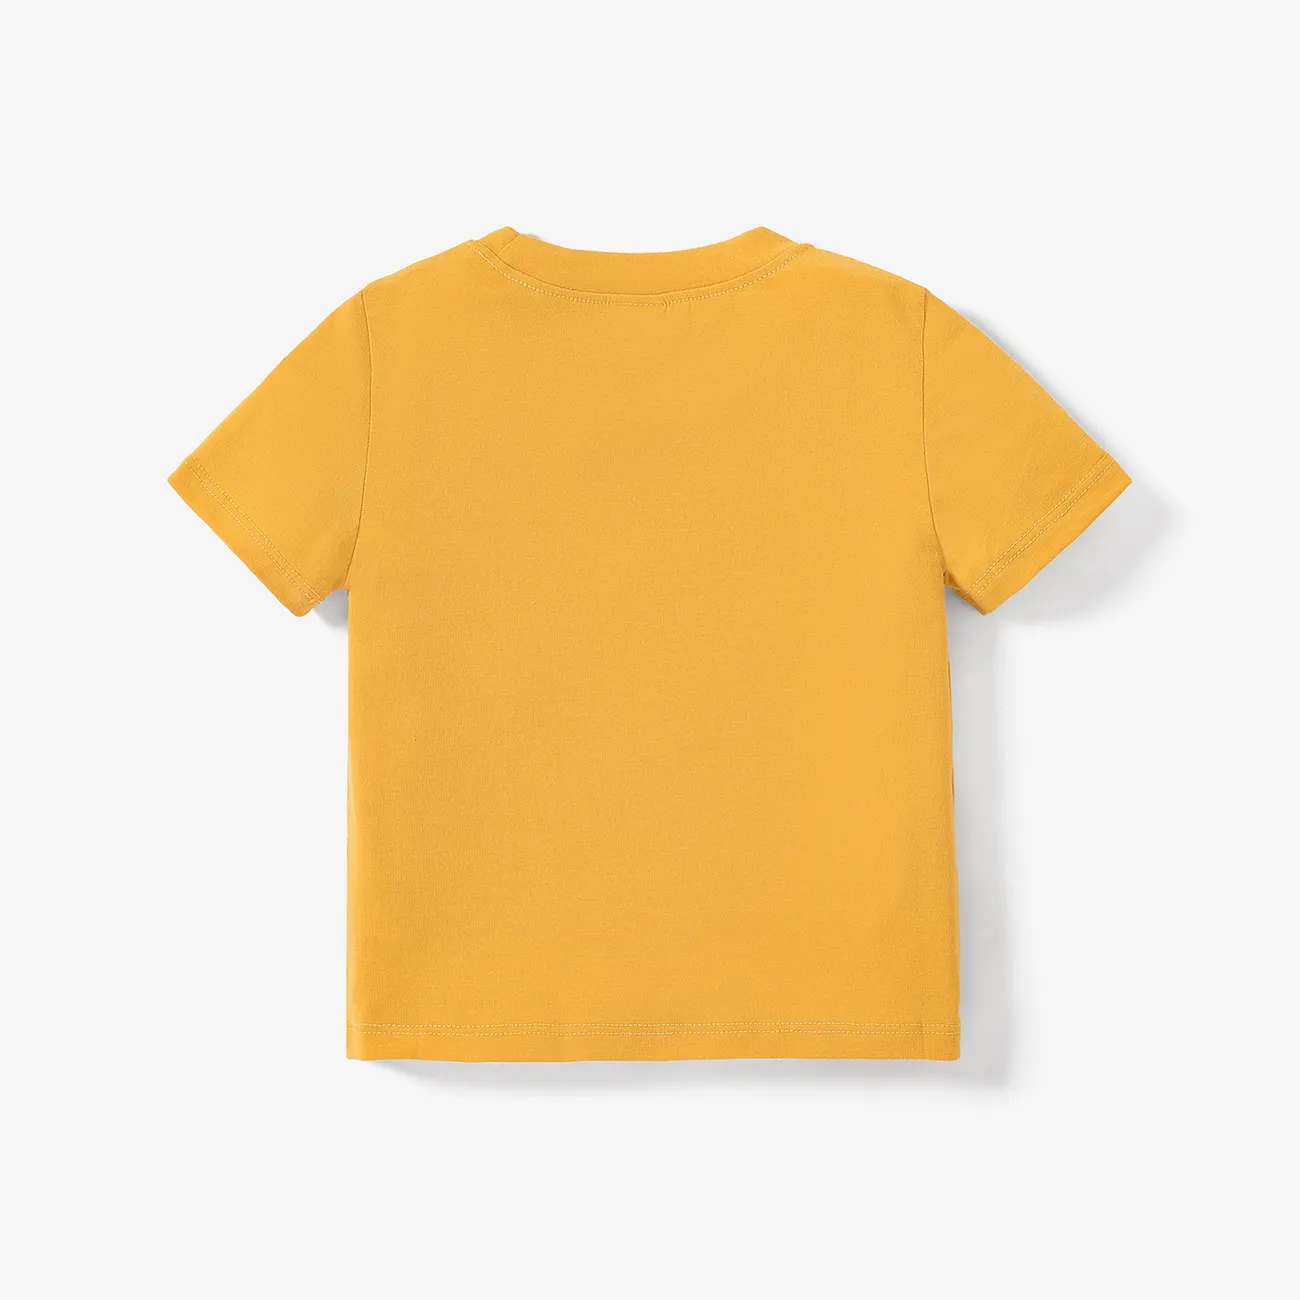 Niño pequeño Chico Infantil León Manga corta Camiseta amarillo claro big image 1